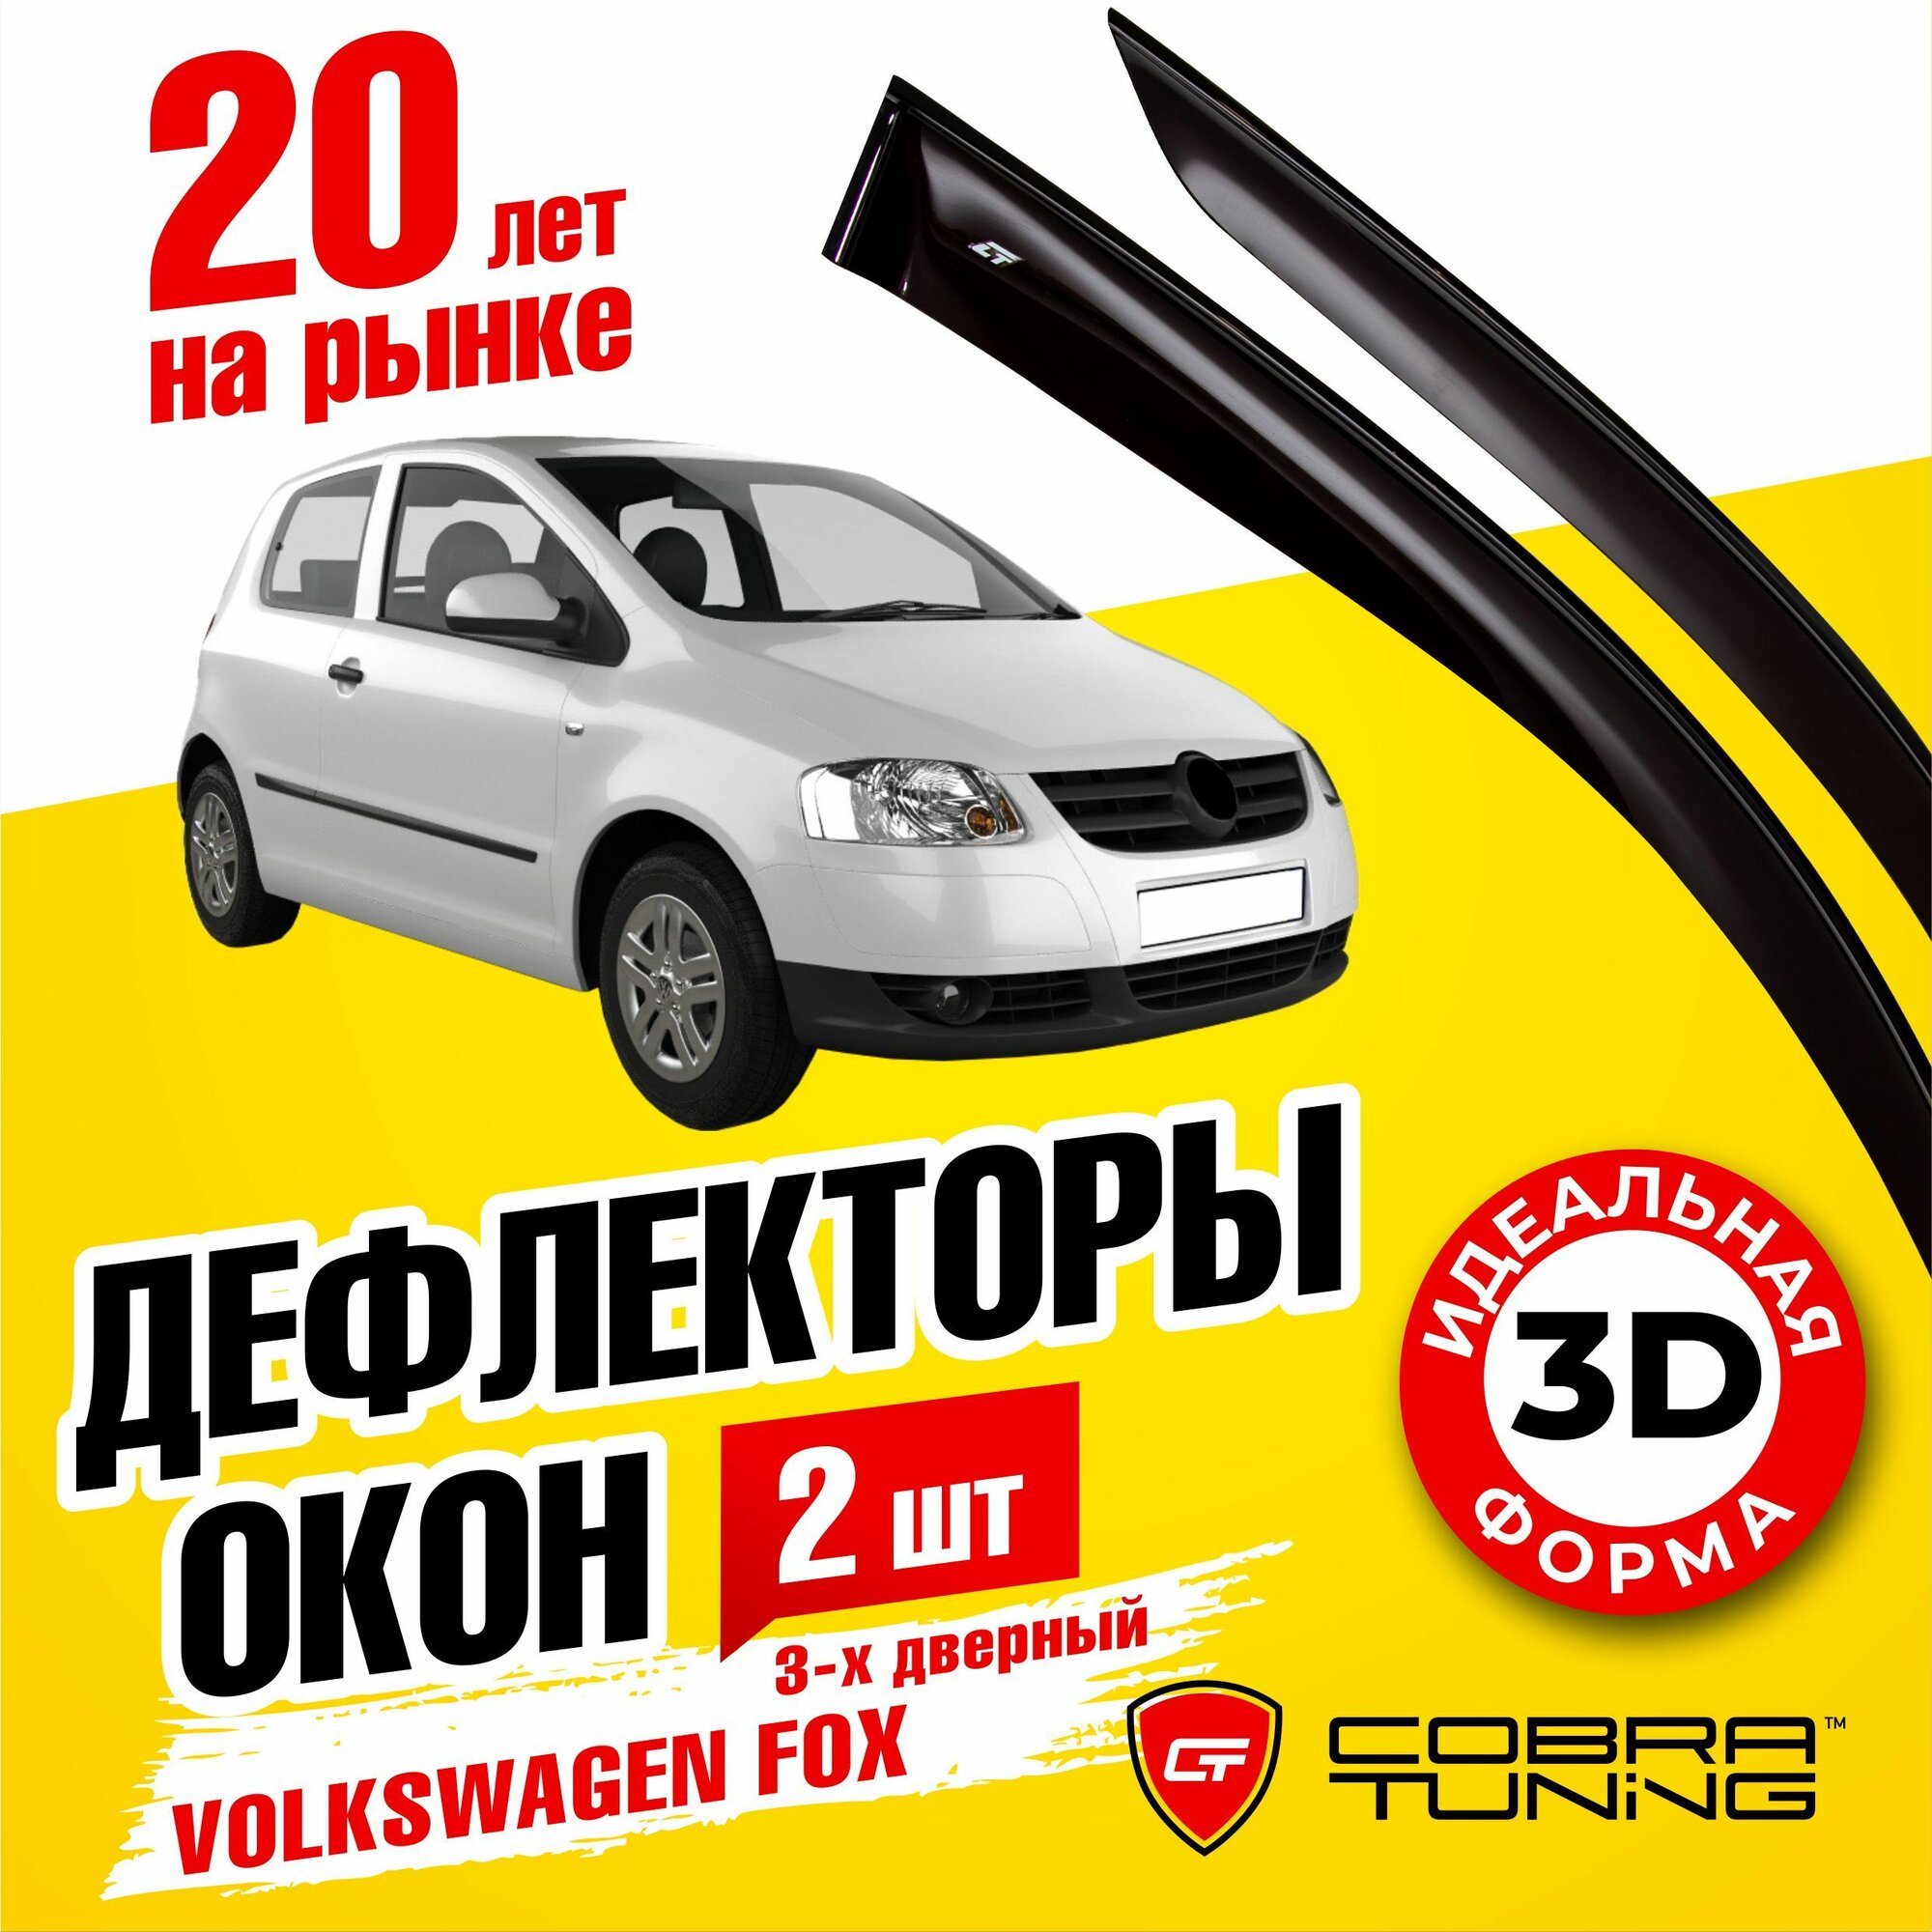 Дефлекторы боковых окон для Volkswagen Fox (Фольксваген Фокс) хэтчбек 3-ёх дверный 2003-2011, ветровики на двери автомобиля, Cobra Tuning,